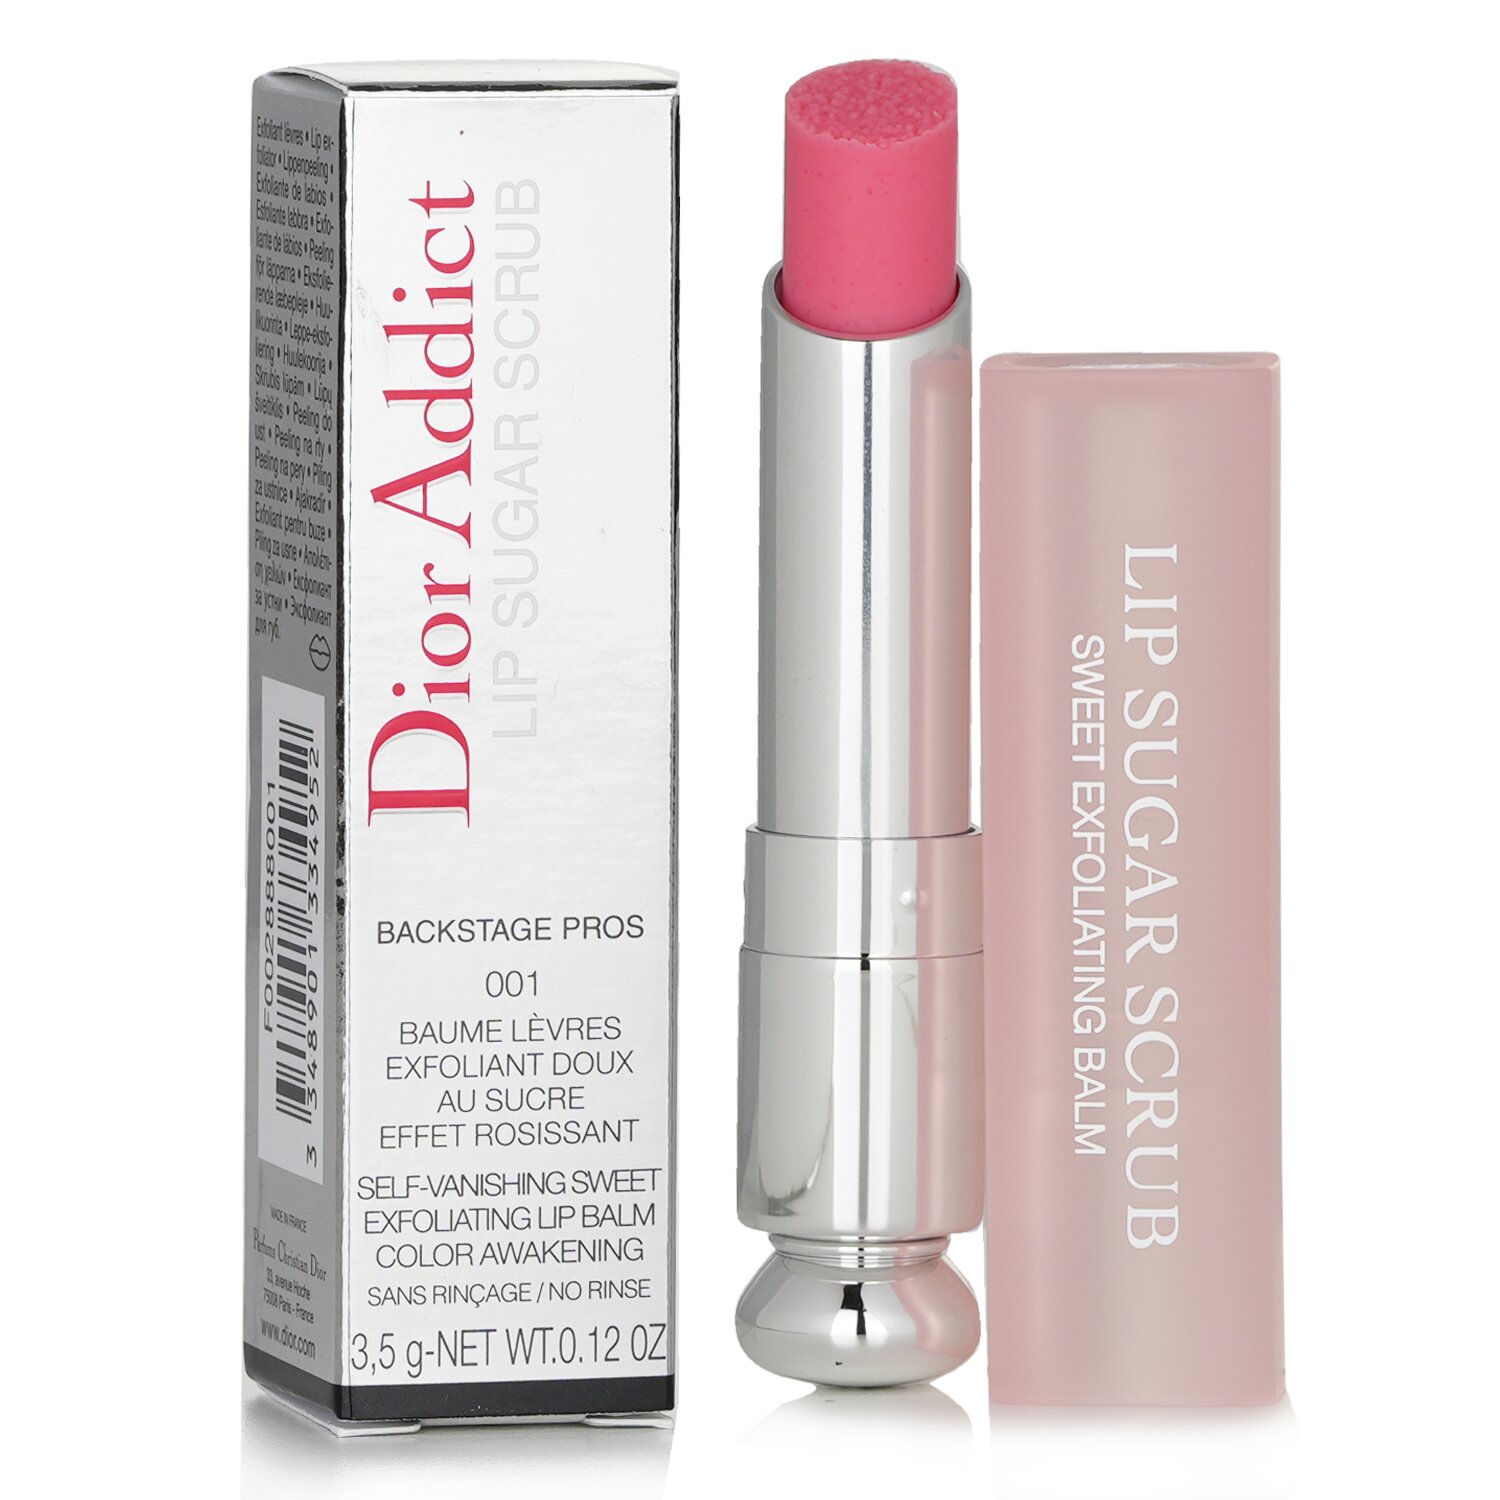 Christian Dior Dior Addict Lip Sugar Scrub 3.5g/0.12oz